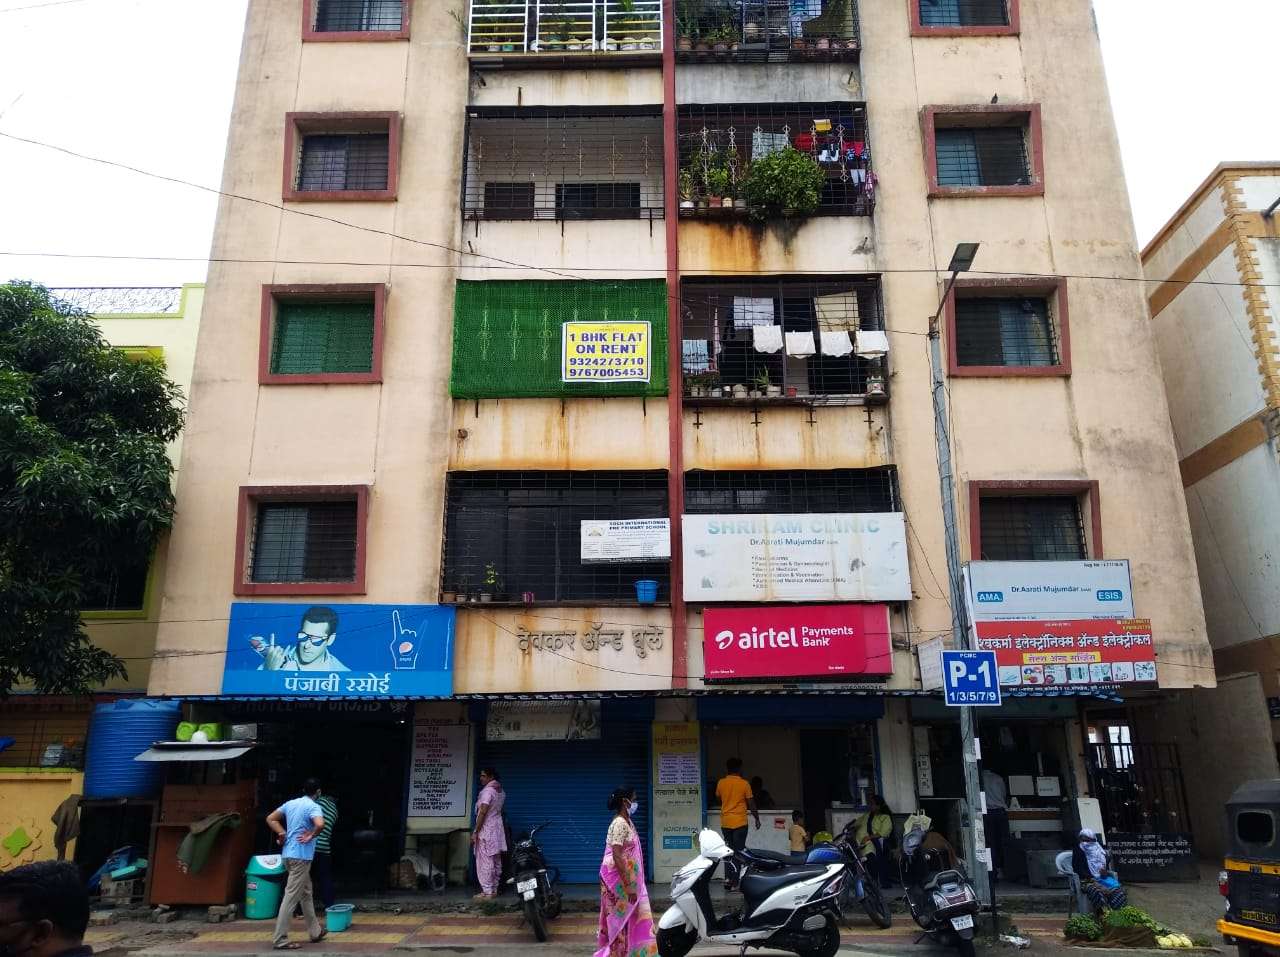 1 BHK Apartment For Resale in Bopkhel Pune 6457285